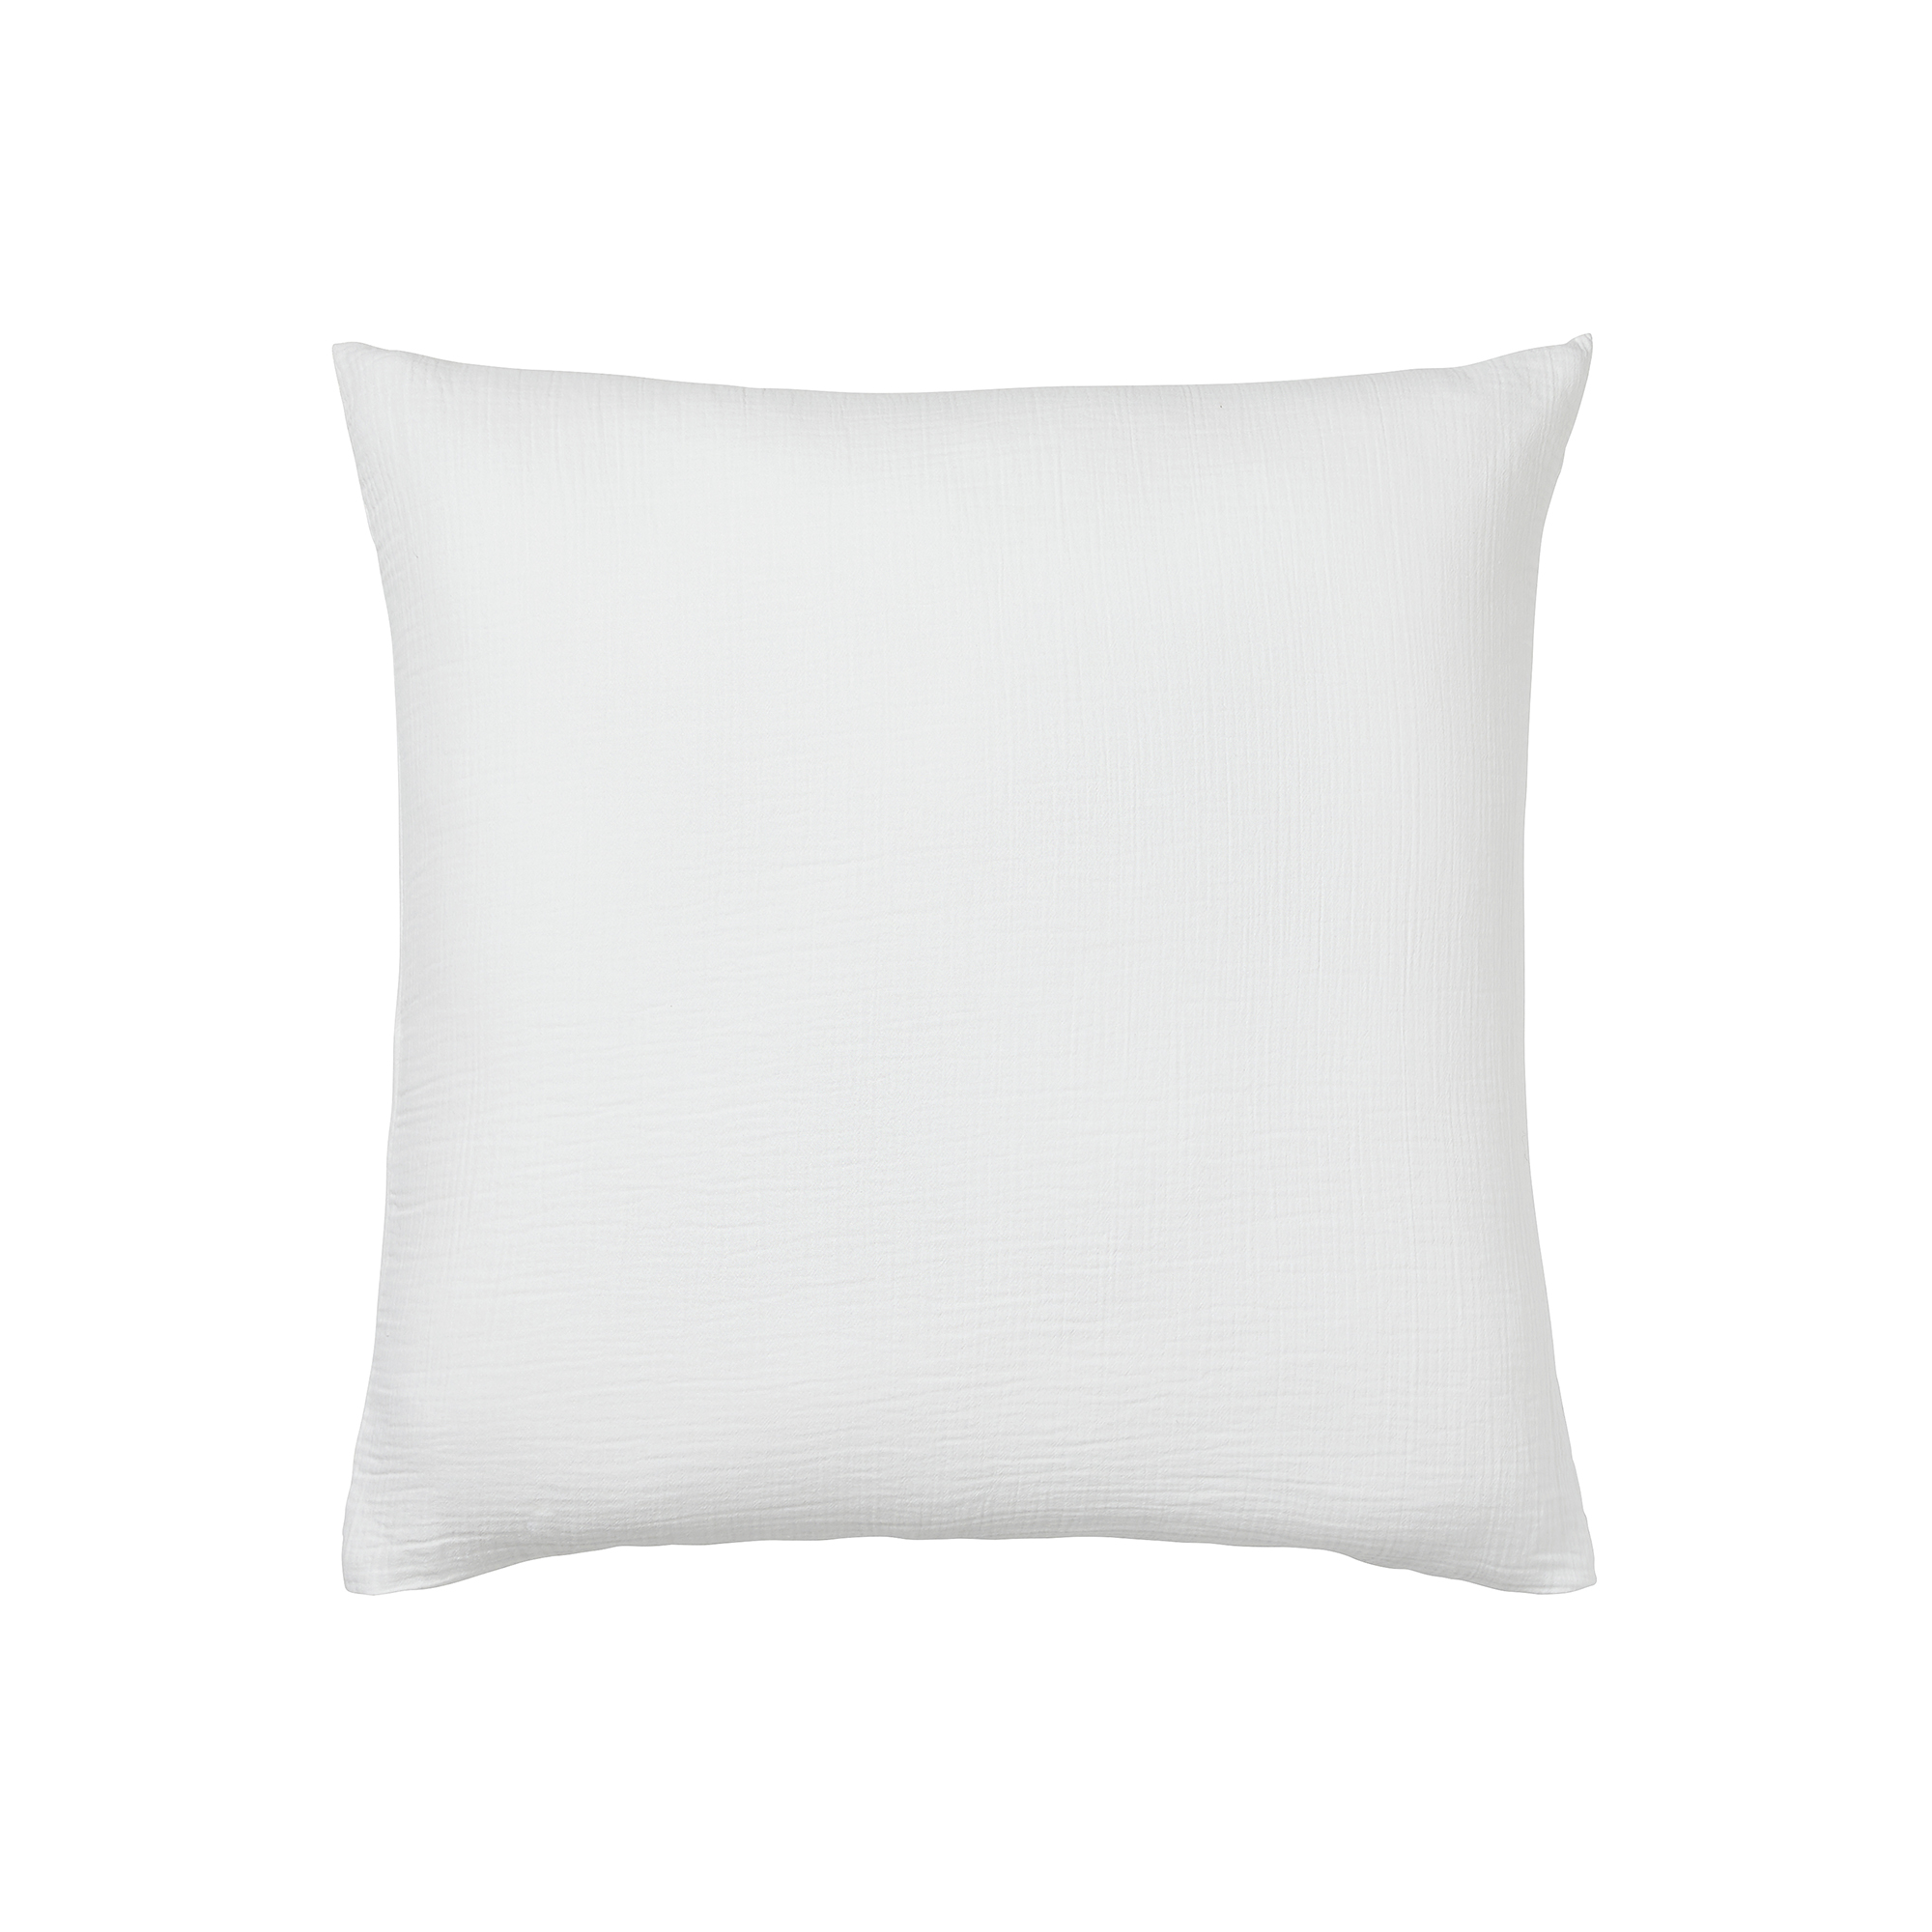 Taie d'oreiller unie en coton blanc 65x65